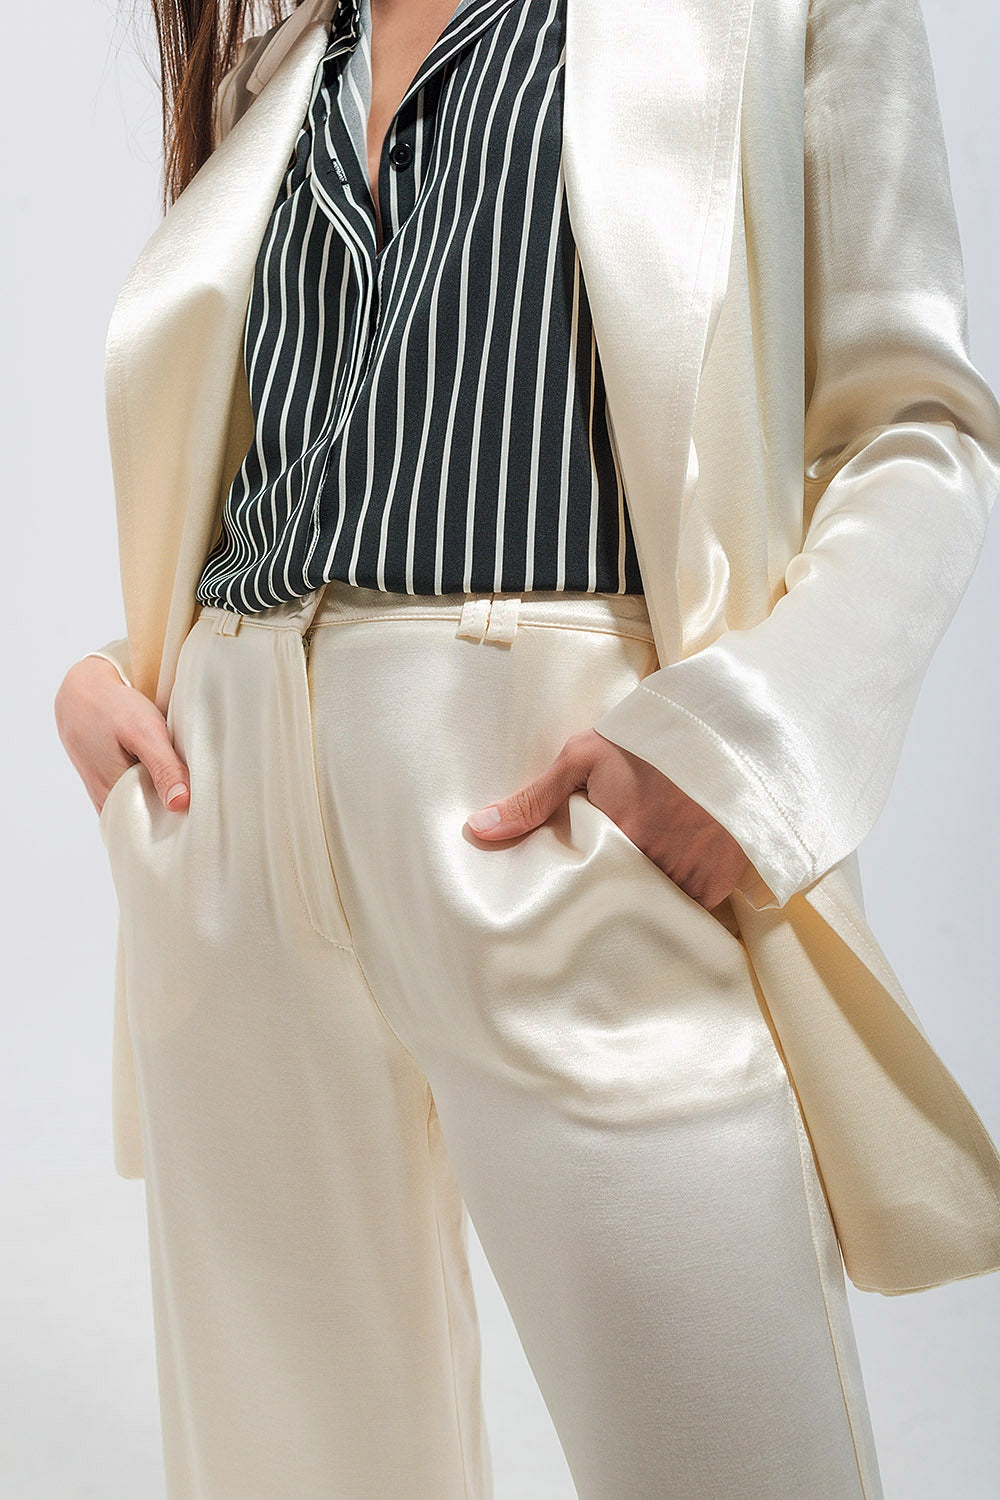 Pantaloni con fondo ampio in raso colore crema